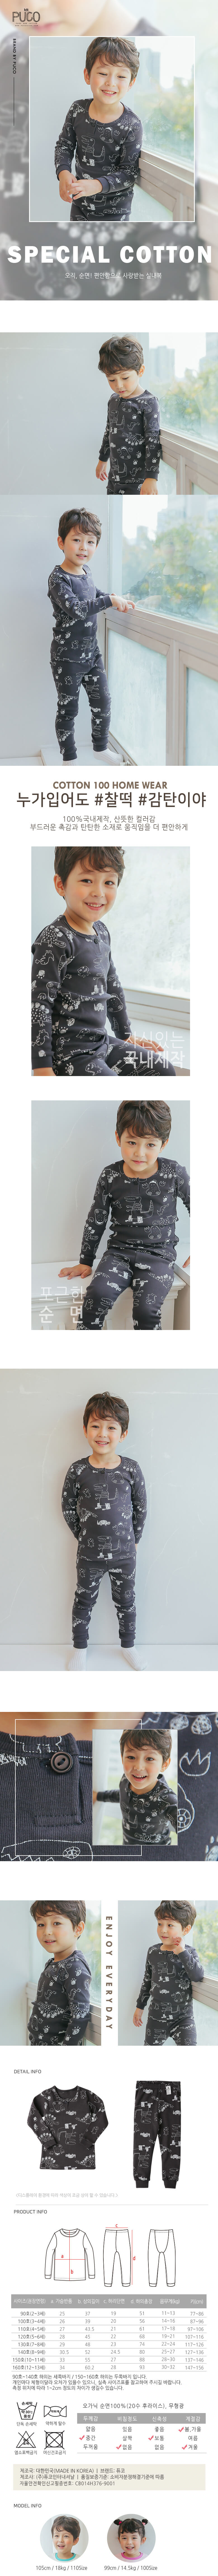 韓國製有機棉家居服(中厚款)-恐龍